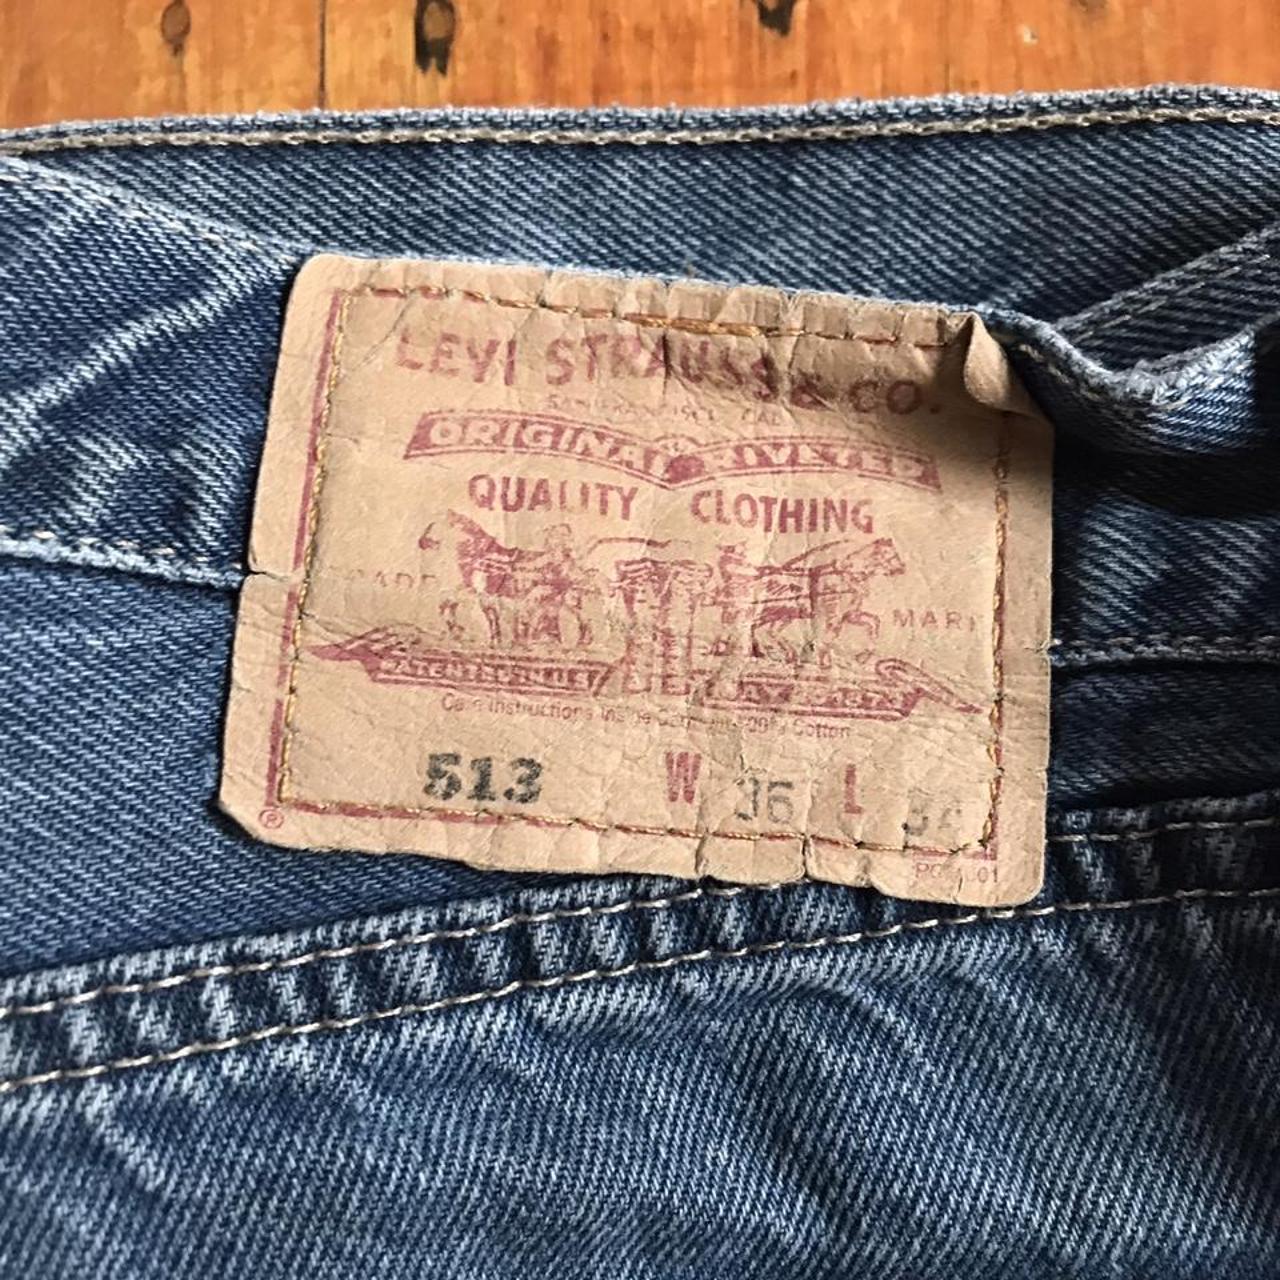 Vintage 1990’s Levi’s 513 jeans with regular fit.... - Depop